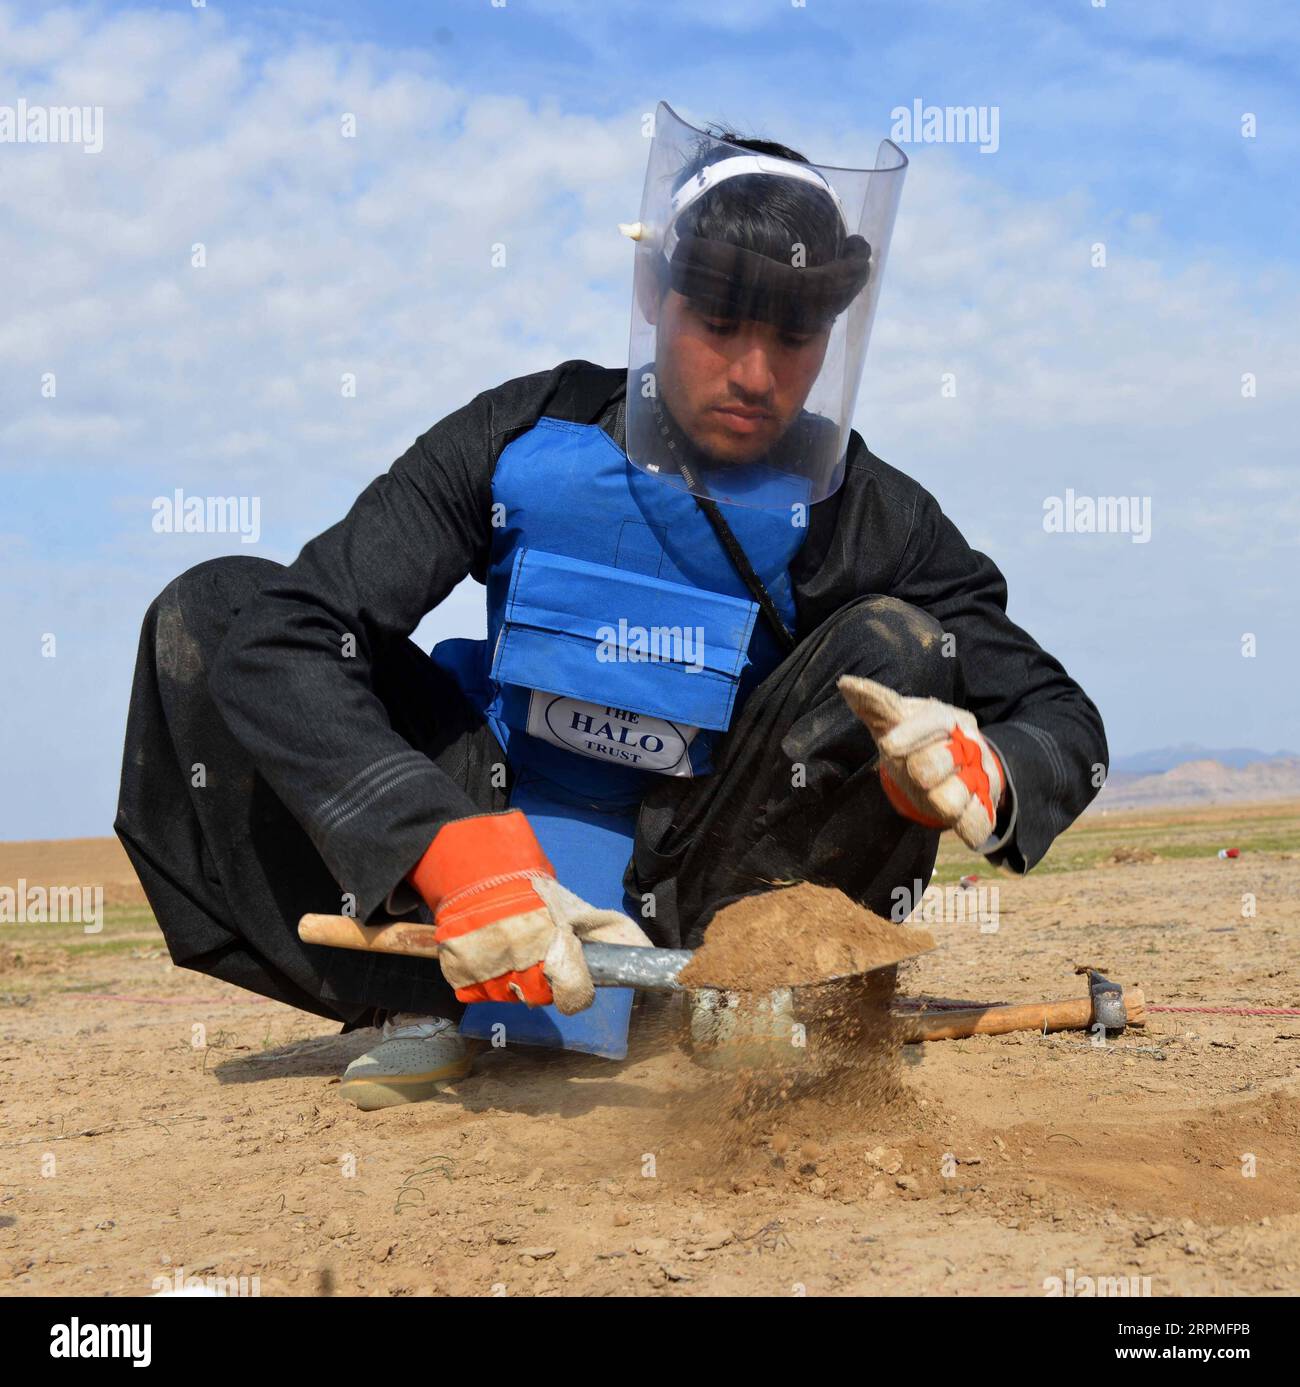 200211 -- KANDAHAR, 11 febbraio 2020 Xinhua -- un deminatore afghano cerca mine terrestri nel distretto di Zhari nella provincia meridionale di Kandahar in Afghanistan, 10 febbraio 2020. Foto di Sanaullah Seiam/Xinhua AFGHANISTAN-KANDAHAR-DE-MINER PUBLICATIONxNOTxINxCHN Foto Stock